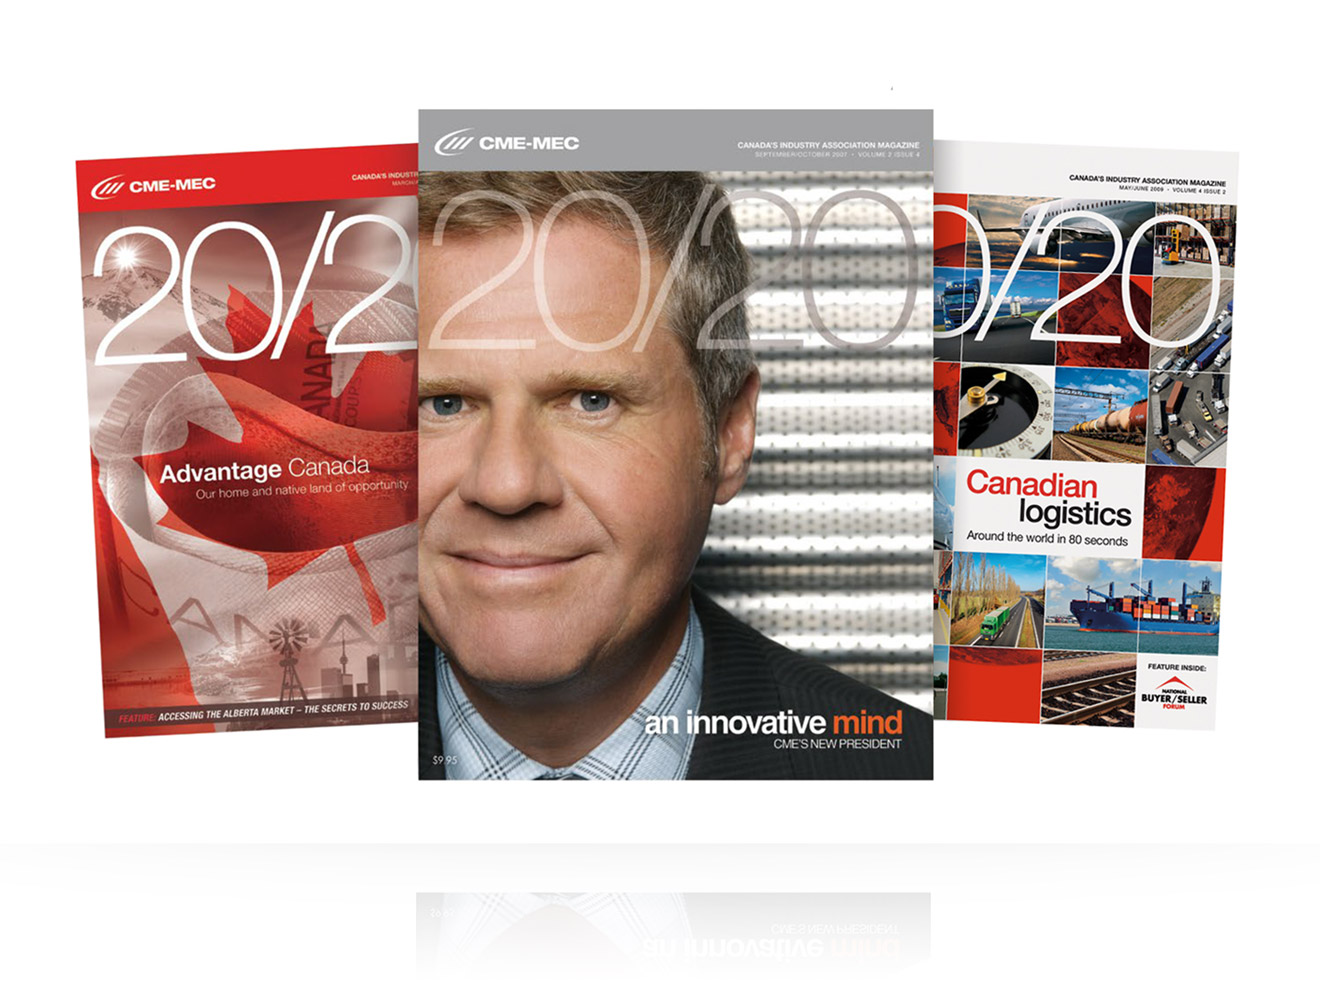 2020 magazine cover and interior spread